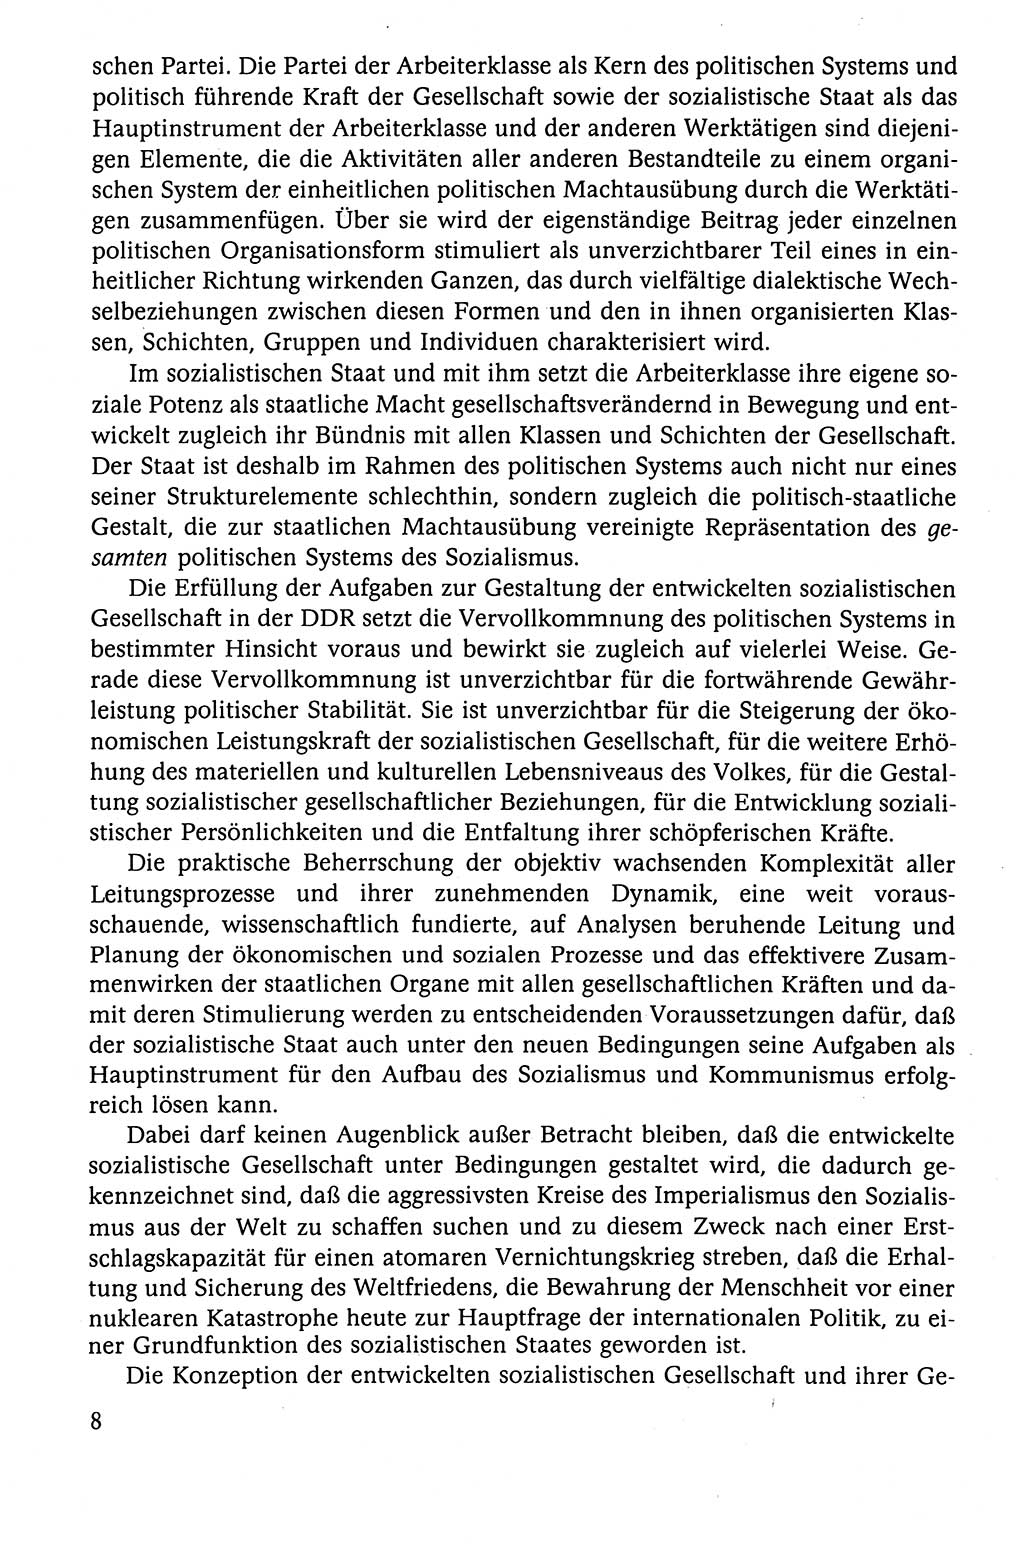 Der Staat im politischen System der DDR (Deutsche Demokratische Republik) 1986, Seite 8 (St. pol. Sys. DDR 1986, S. 8)